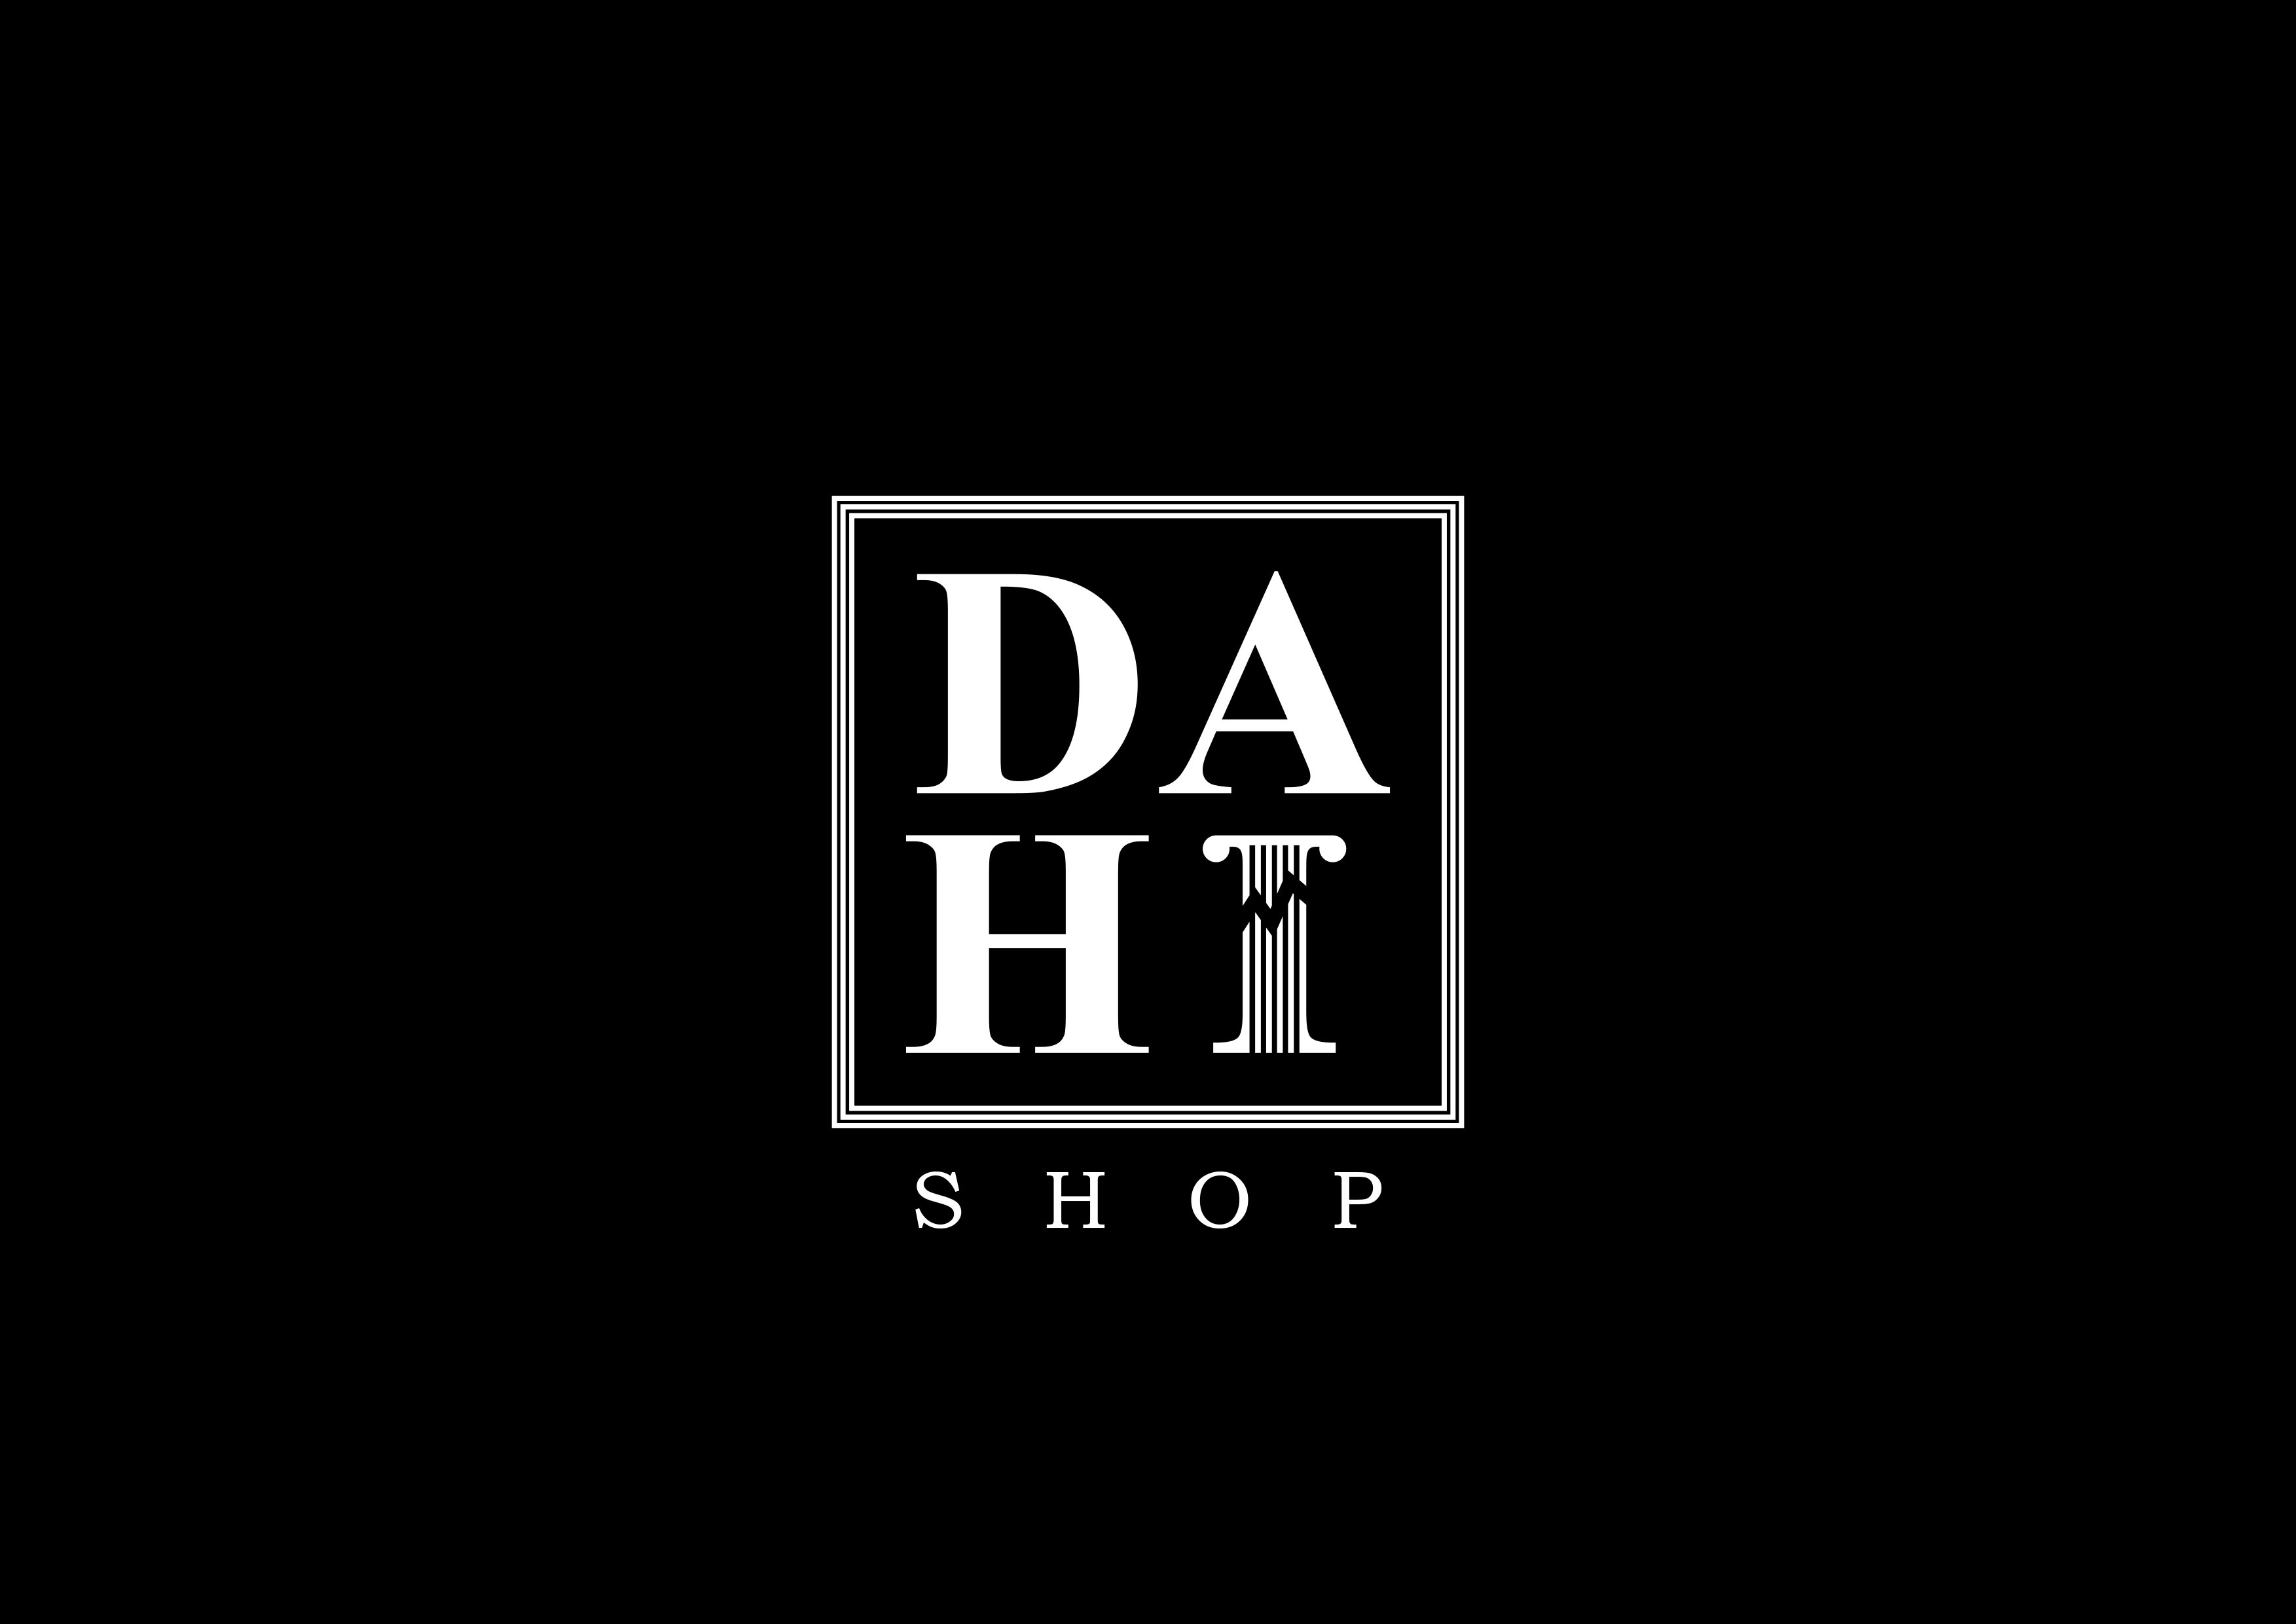 Dahi Shop web sitesine gitmek için yandaki linki ya da aşağıdaki Dahi Shop logosunu tıklayınız.